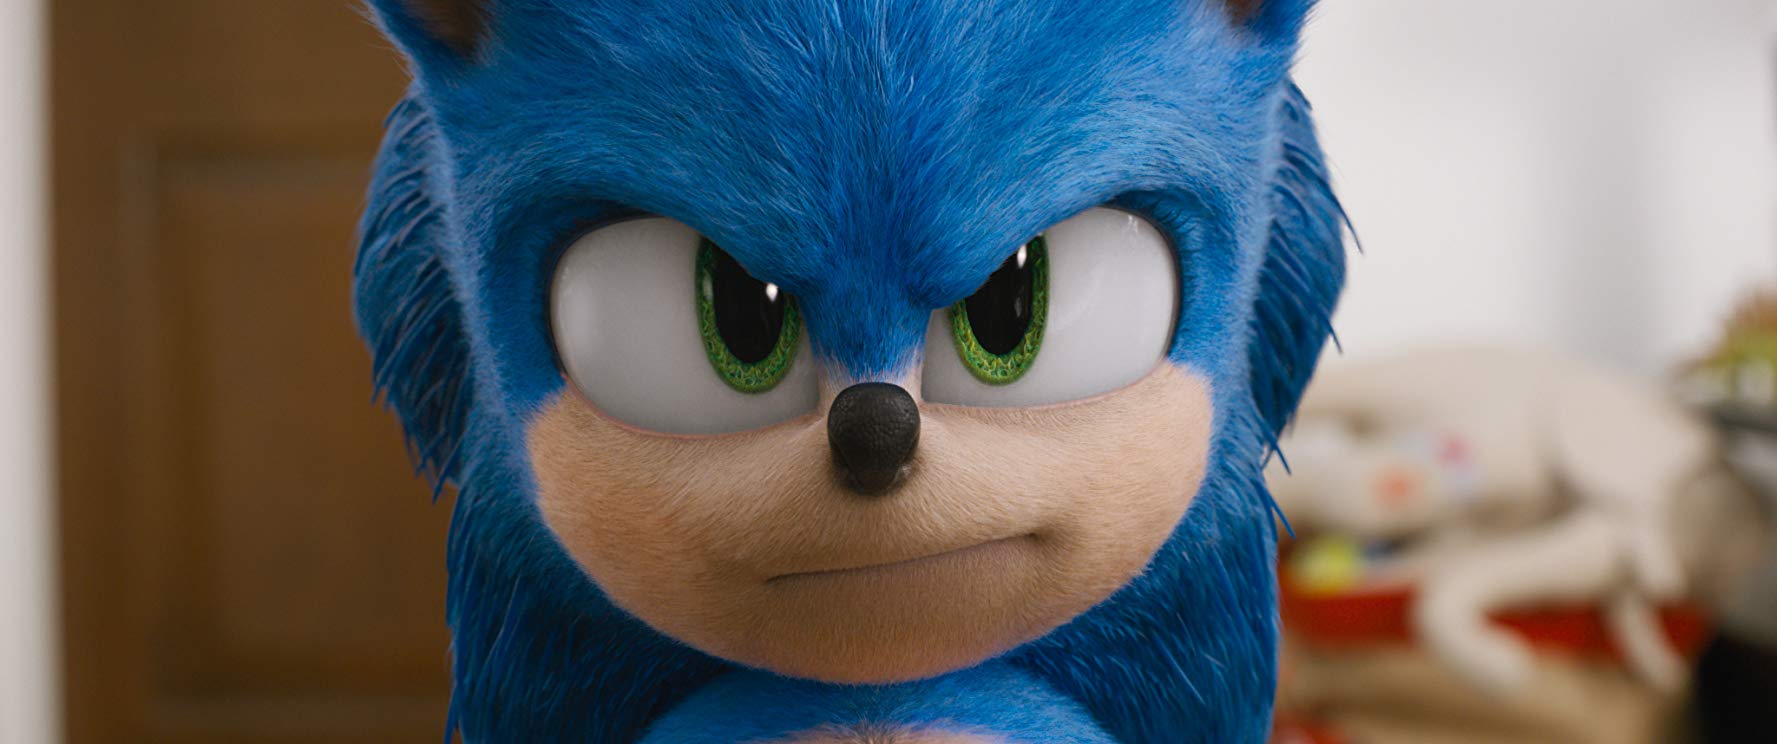 Sonic: O Filme - Bobo, genérico e divertido 11